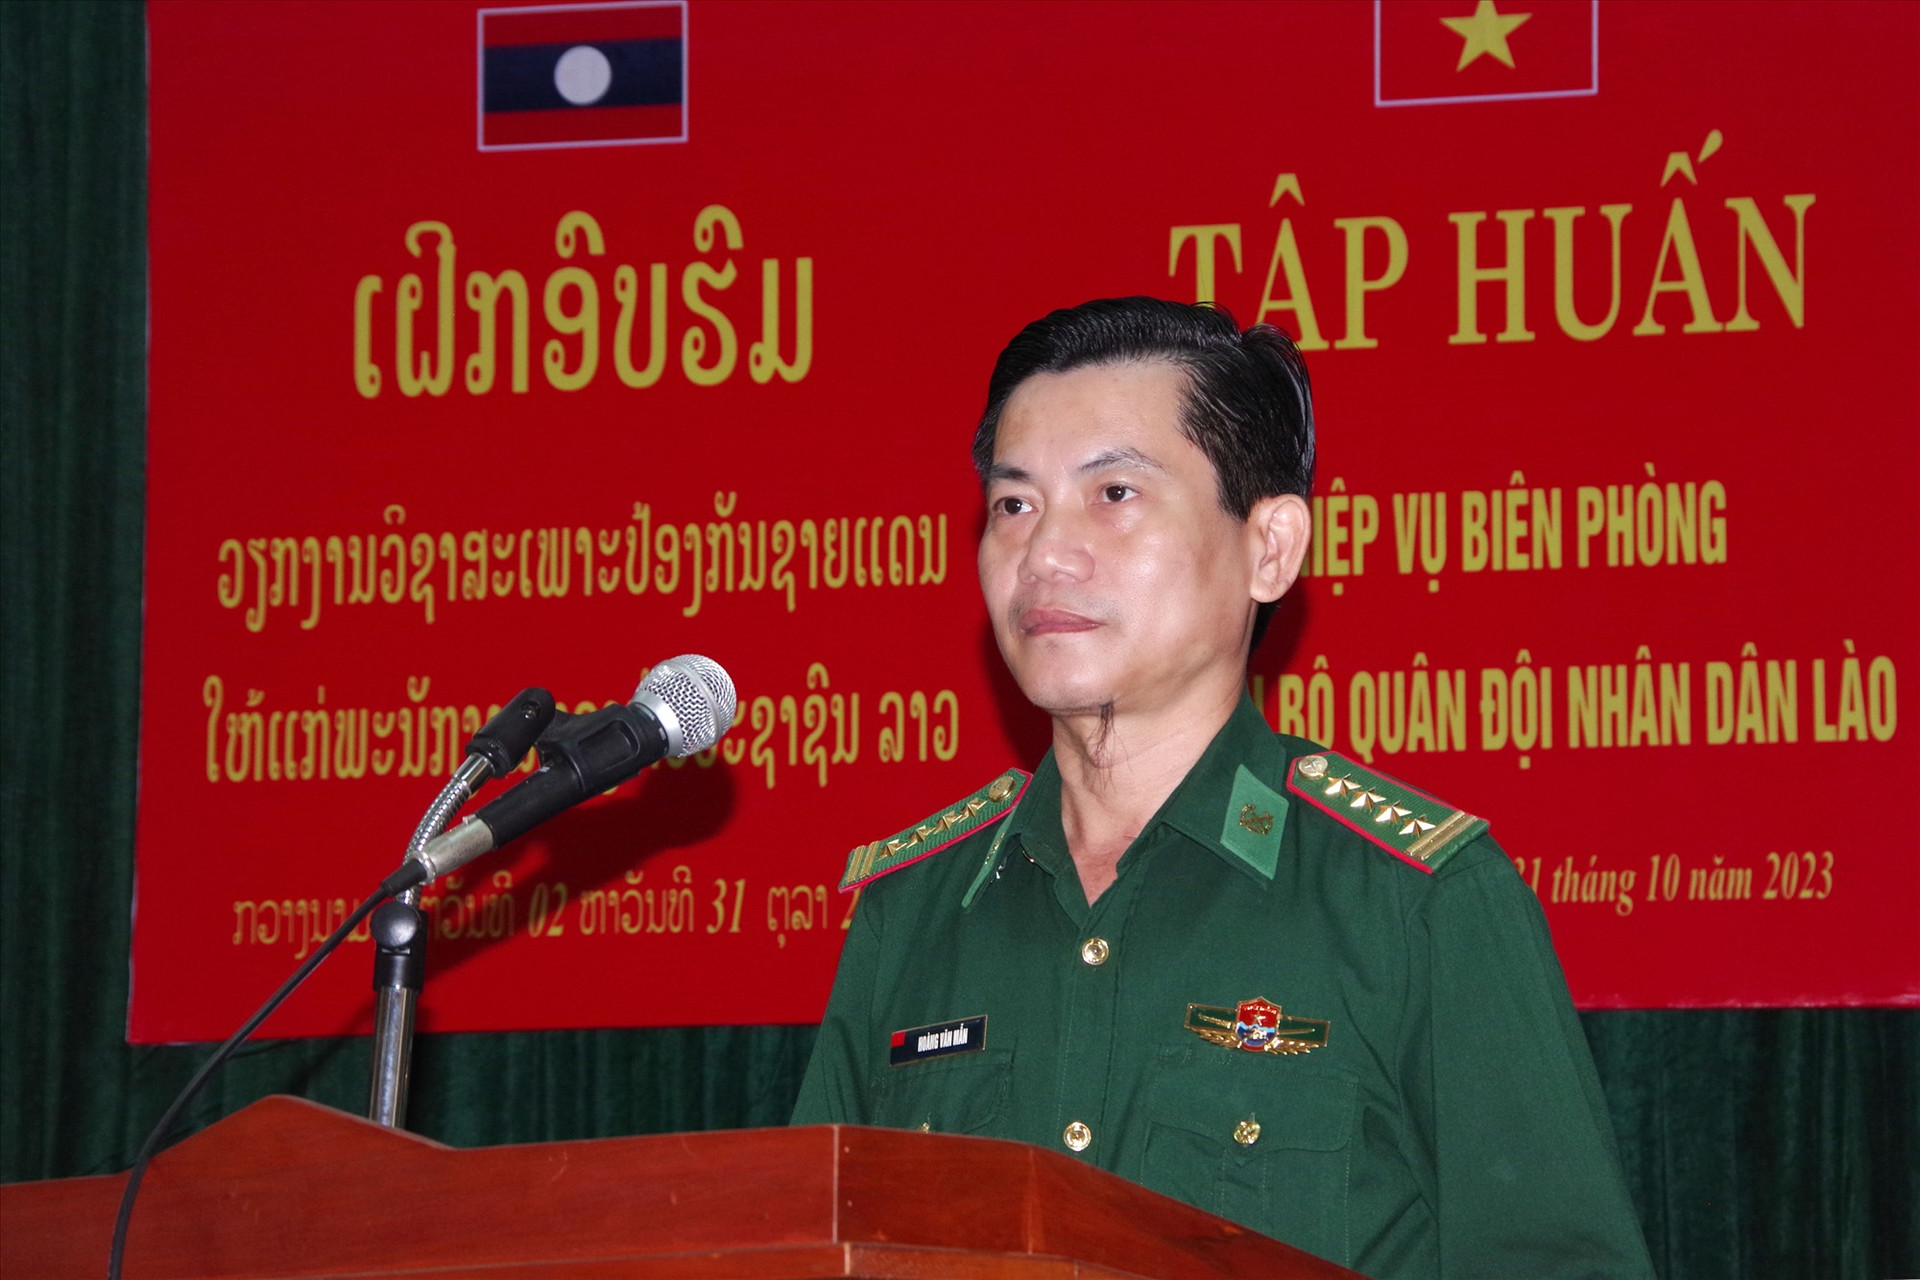 Đại tá Hoàng Văn Mẫn – Chính ủy BĐBP tỉnh phát biểu chỉ đạo tại buổi khai mạc. Ảnh: HUỲNH CHÍN